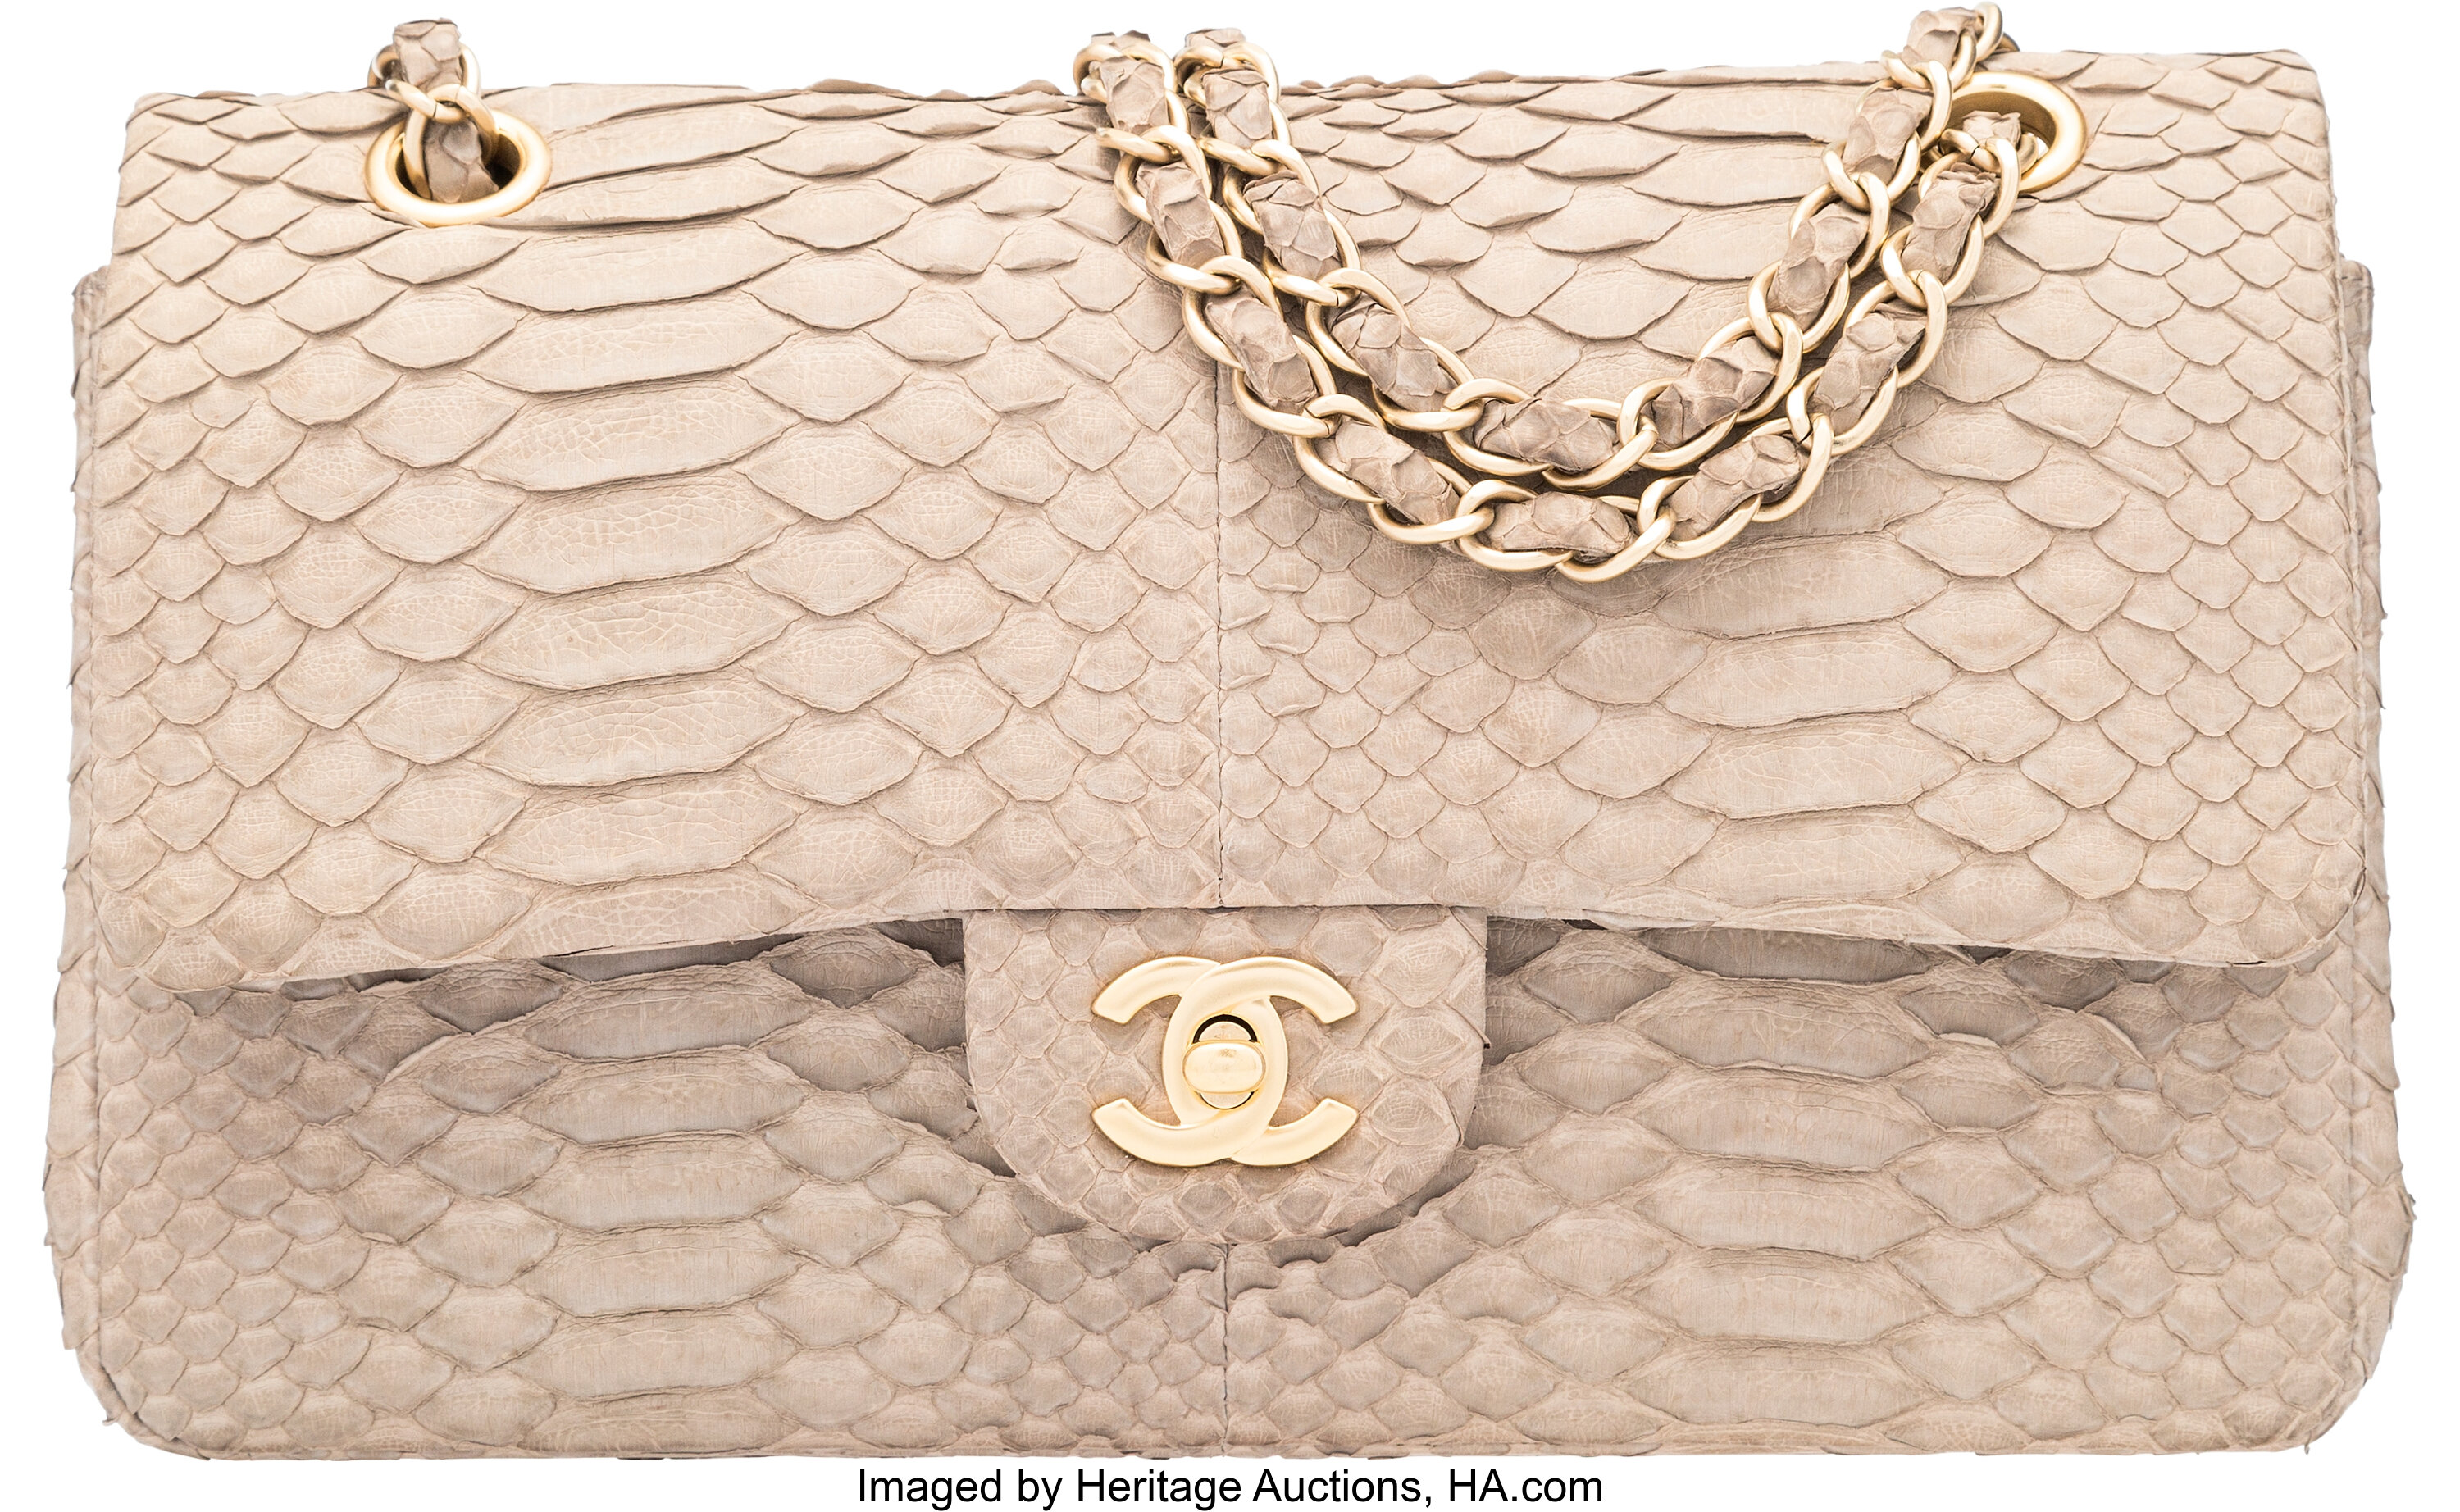 Chanel 2.55 Python Flap Bag